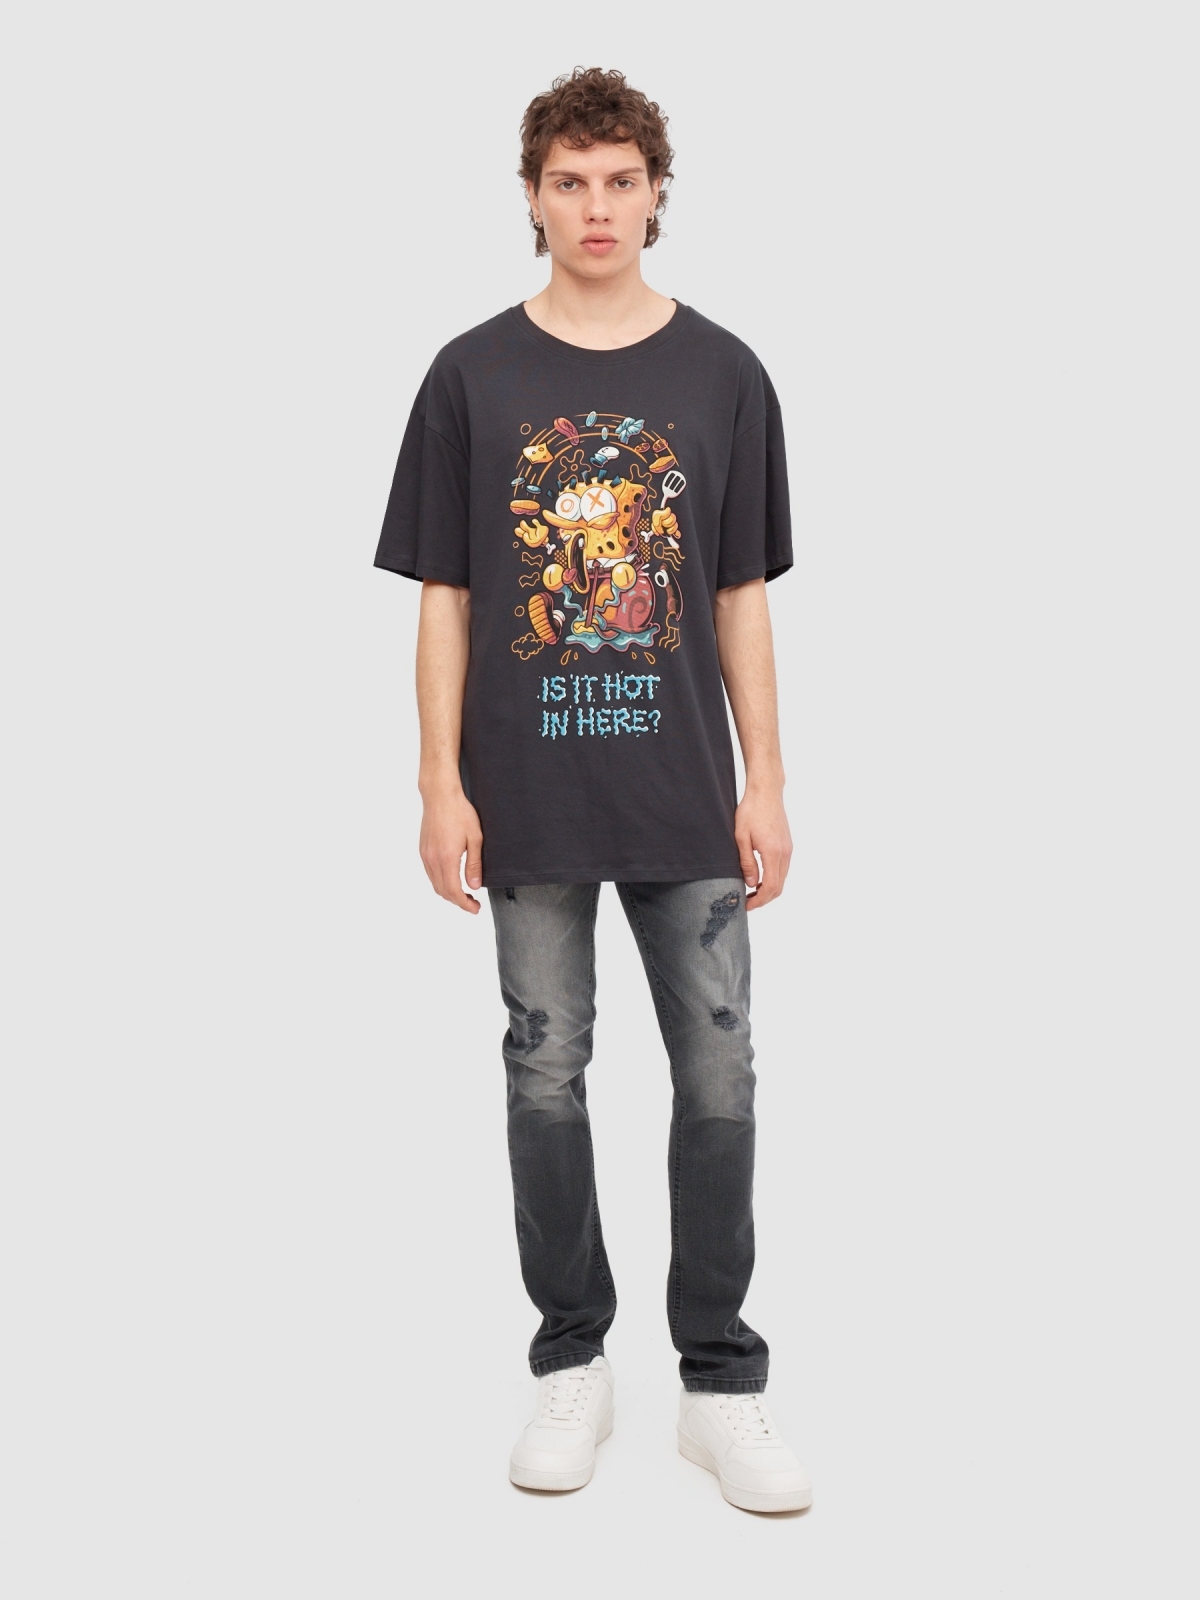 T-Shirt oversize do Bob Esponja cinza escuro vista geral frontal